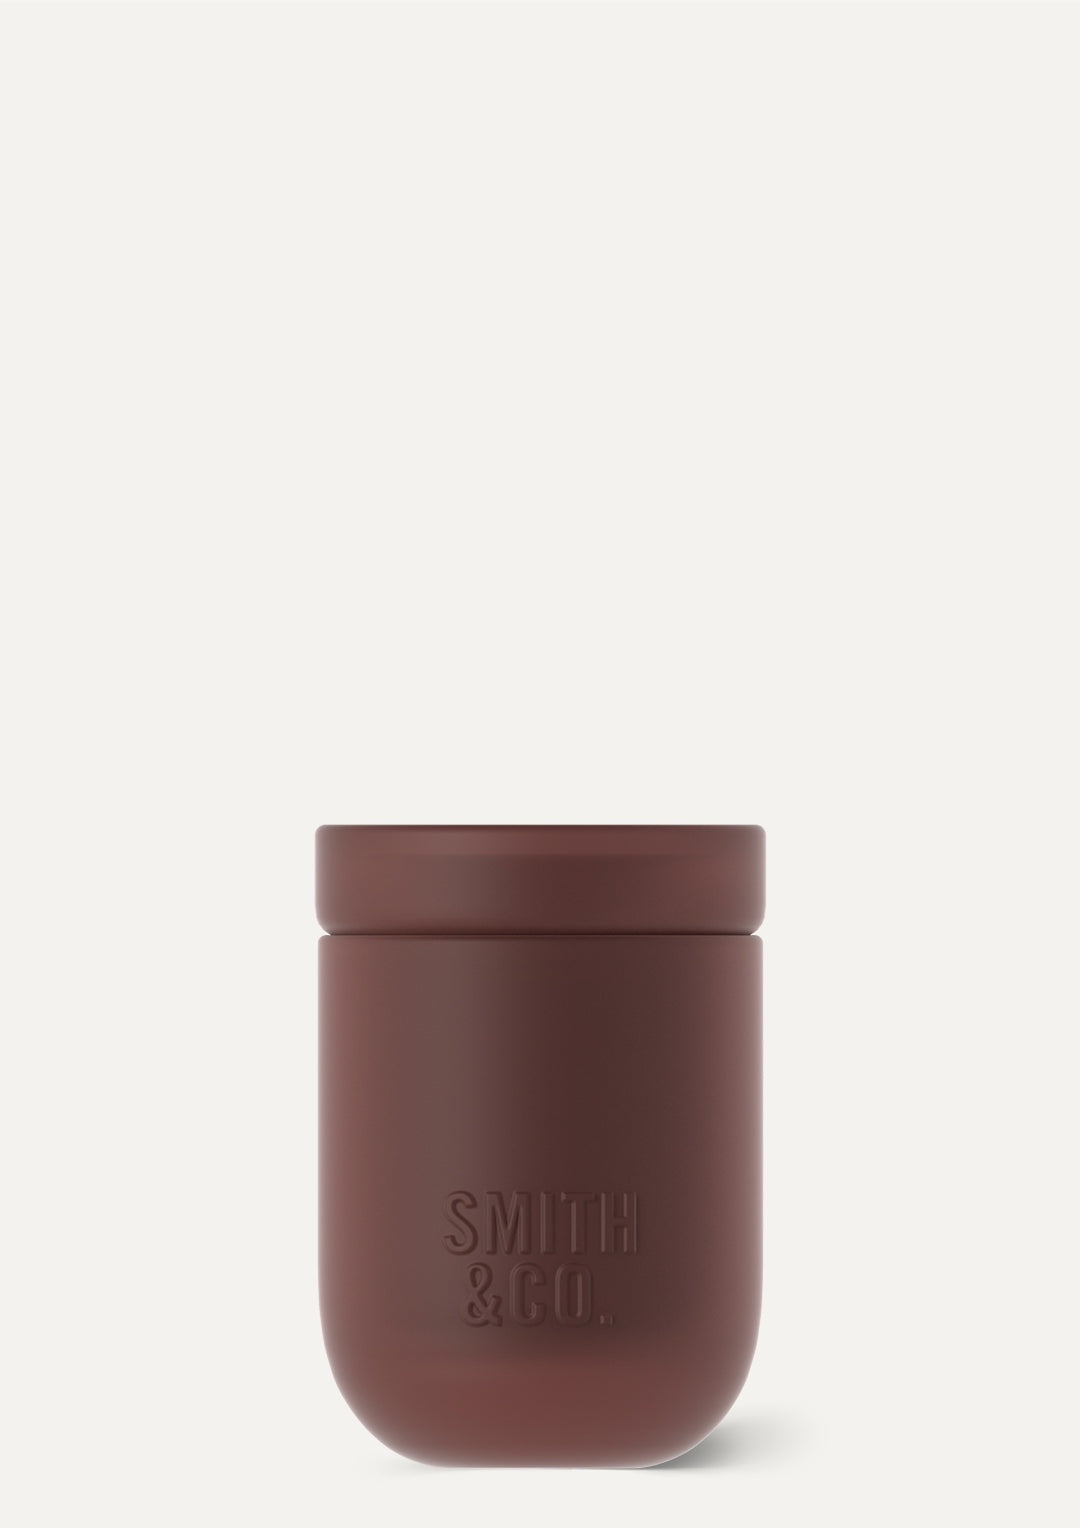 Smith & Co Candle Black Oud & Saffron 250g